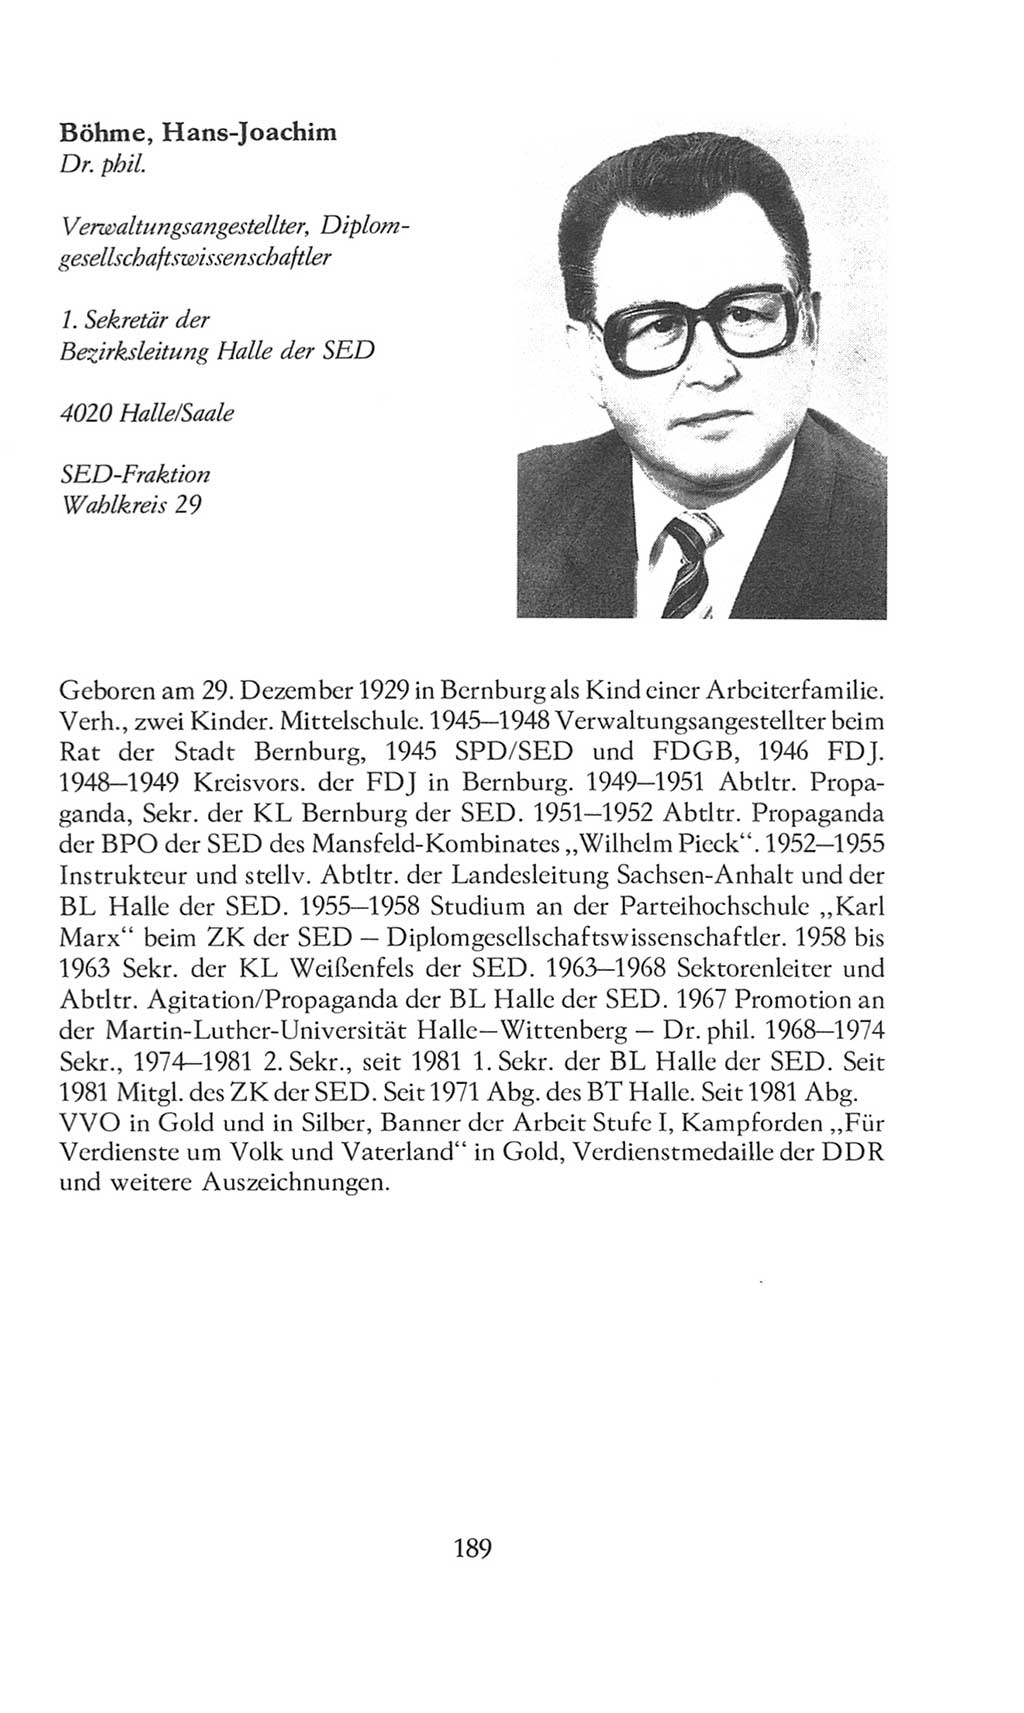 Volkskammer (VK) der Deutschen Demokratischen Republik (DDR), 8. Wahlperiode 1981-1986, Seite 189 (VK. DDR 8. WP. 1981-1986, S. 189)